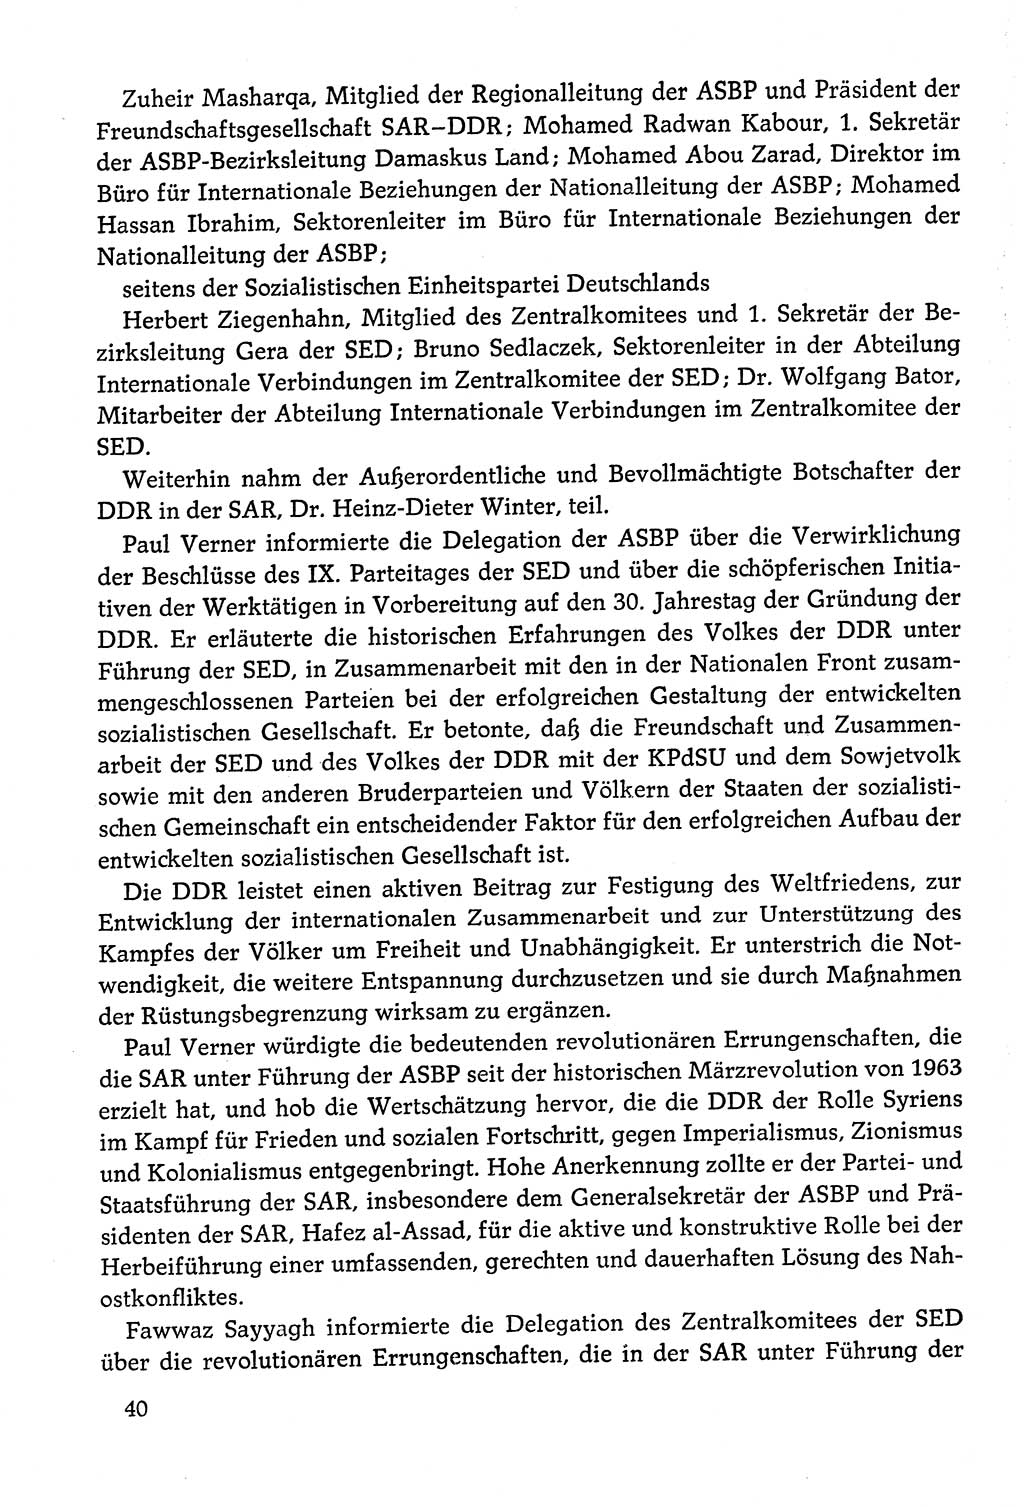 Dokumente der Sozialistischen Einheitspartei Deutschlands (SED) [Deutsche Demokratische Republik (DDR)] 1978-1979, Seite 40 (Dok. SED DDR 1978-1979, S. 40)